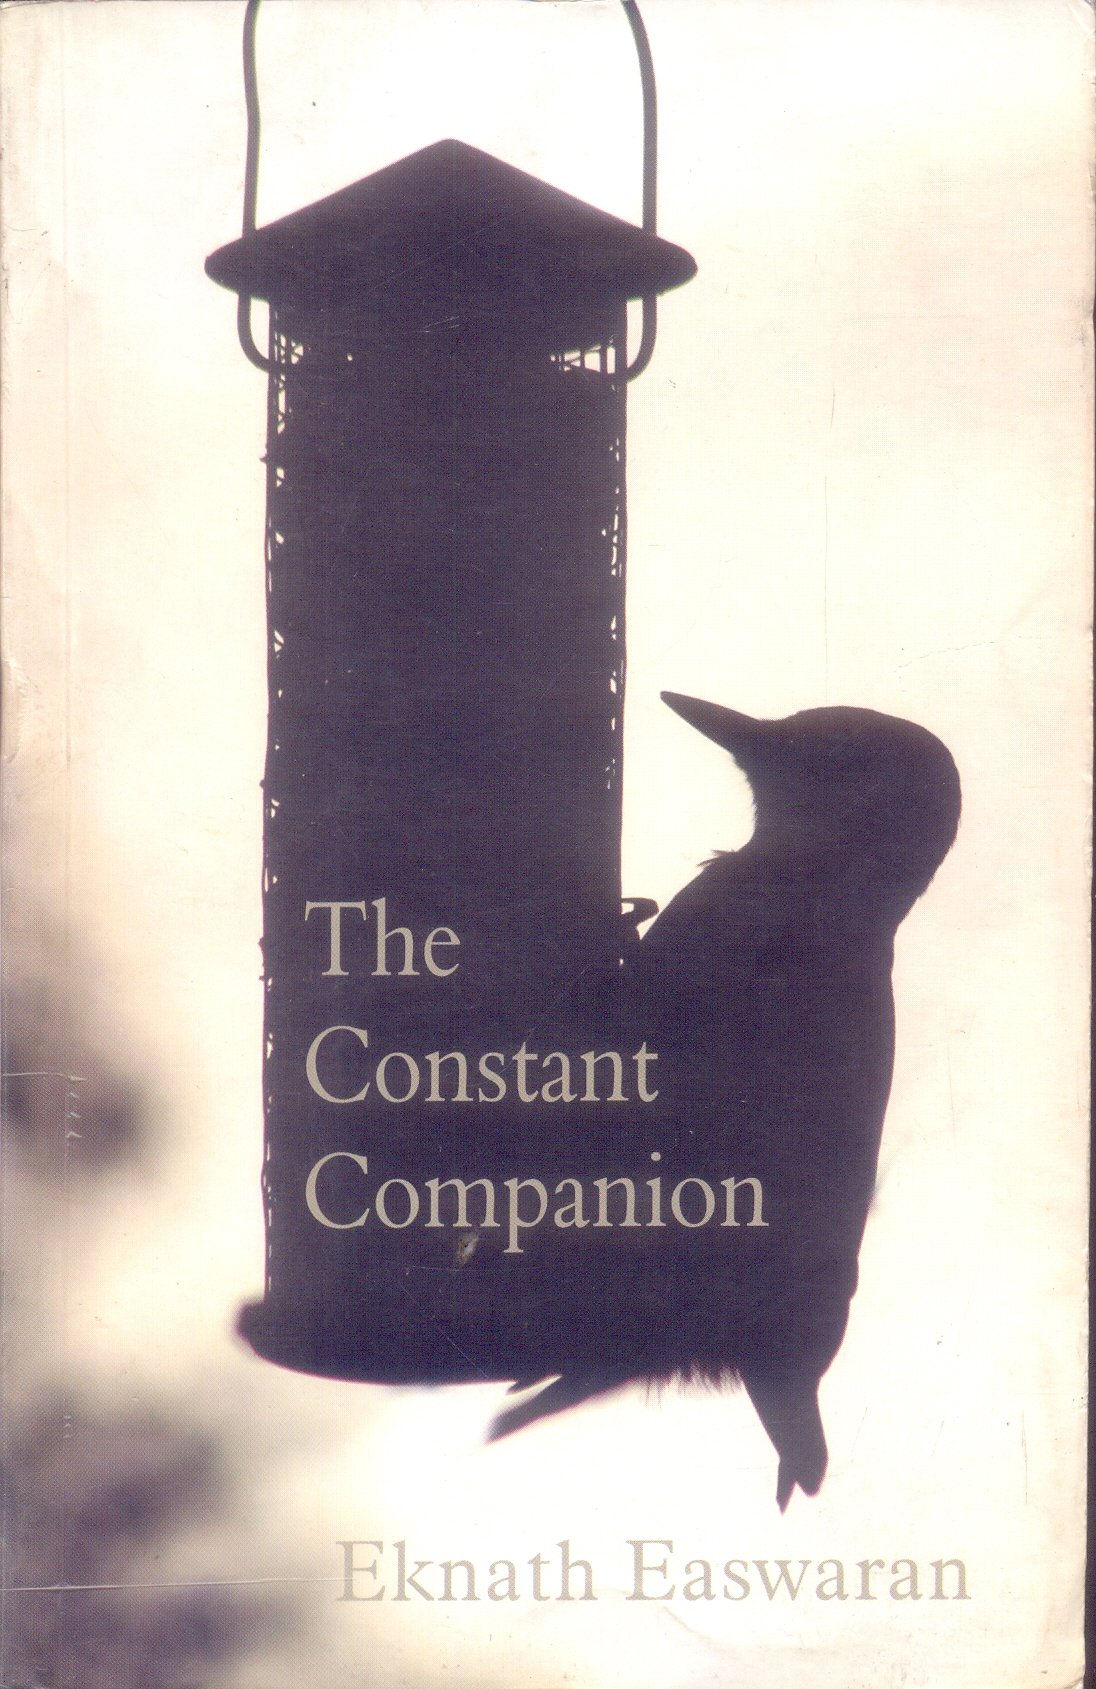 The Constant Companion